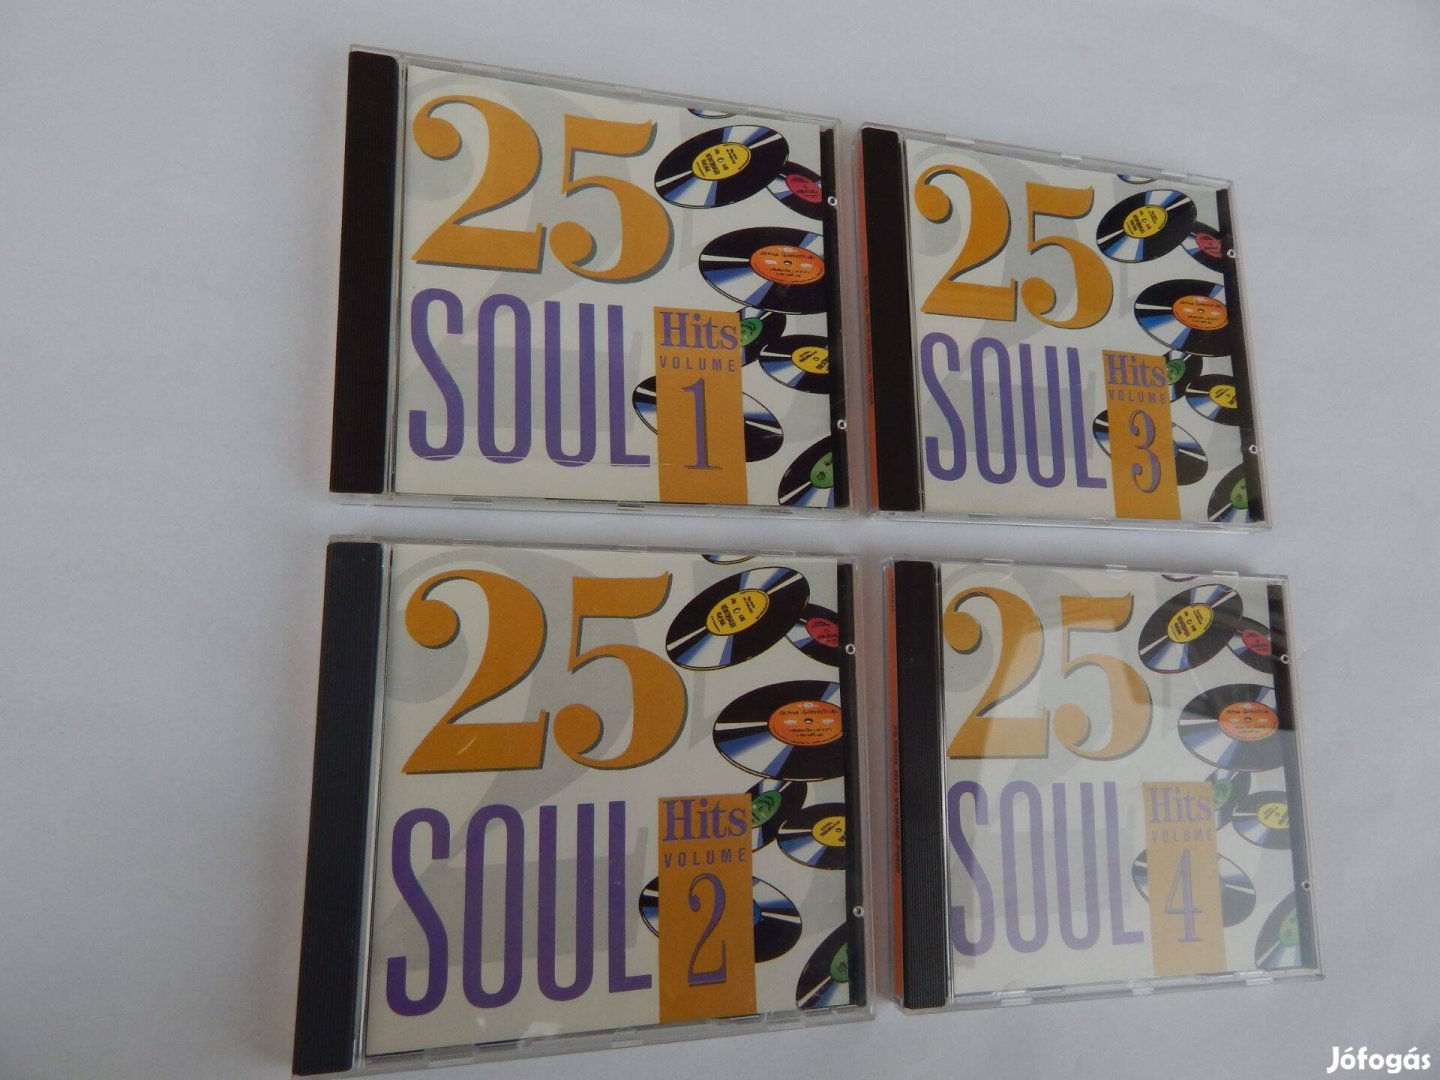 25 Soul Hits Vol. 1-4 Műsoros Audió CD lemezek 4-es Szettben